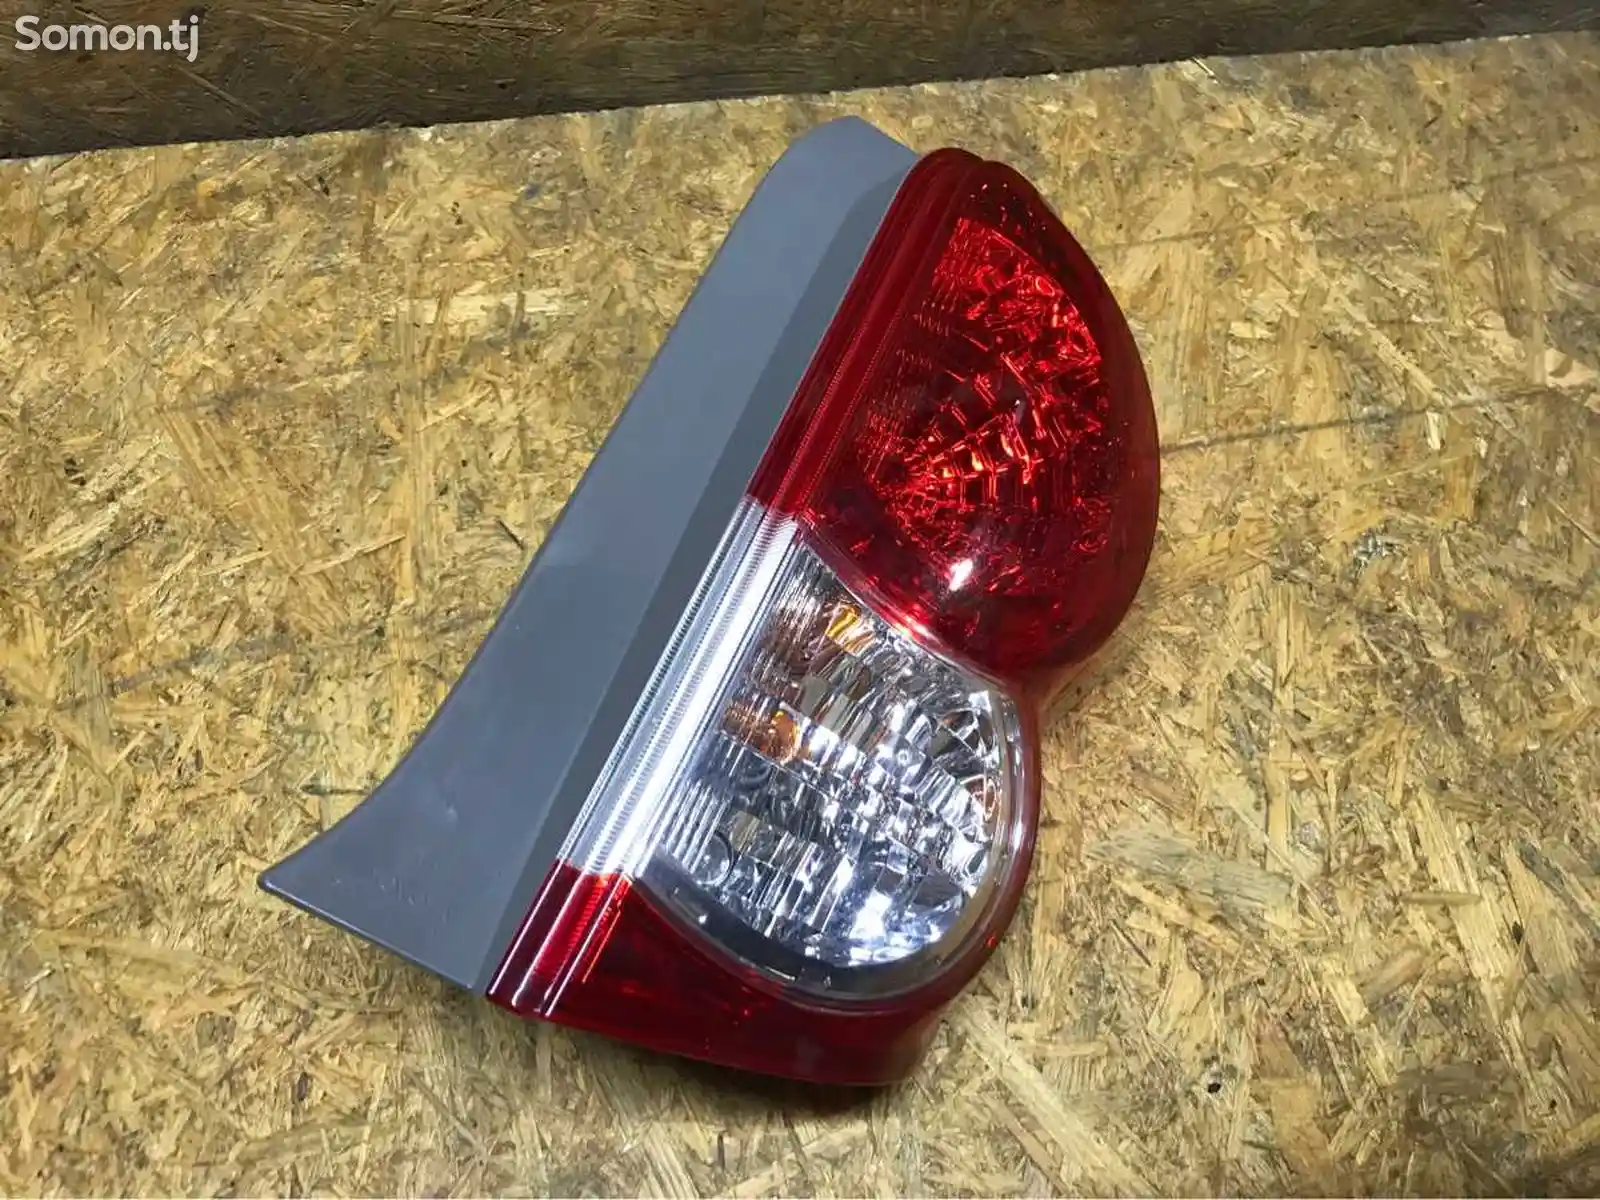 Задний правый фонарь на Toyota Rumion-6